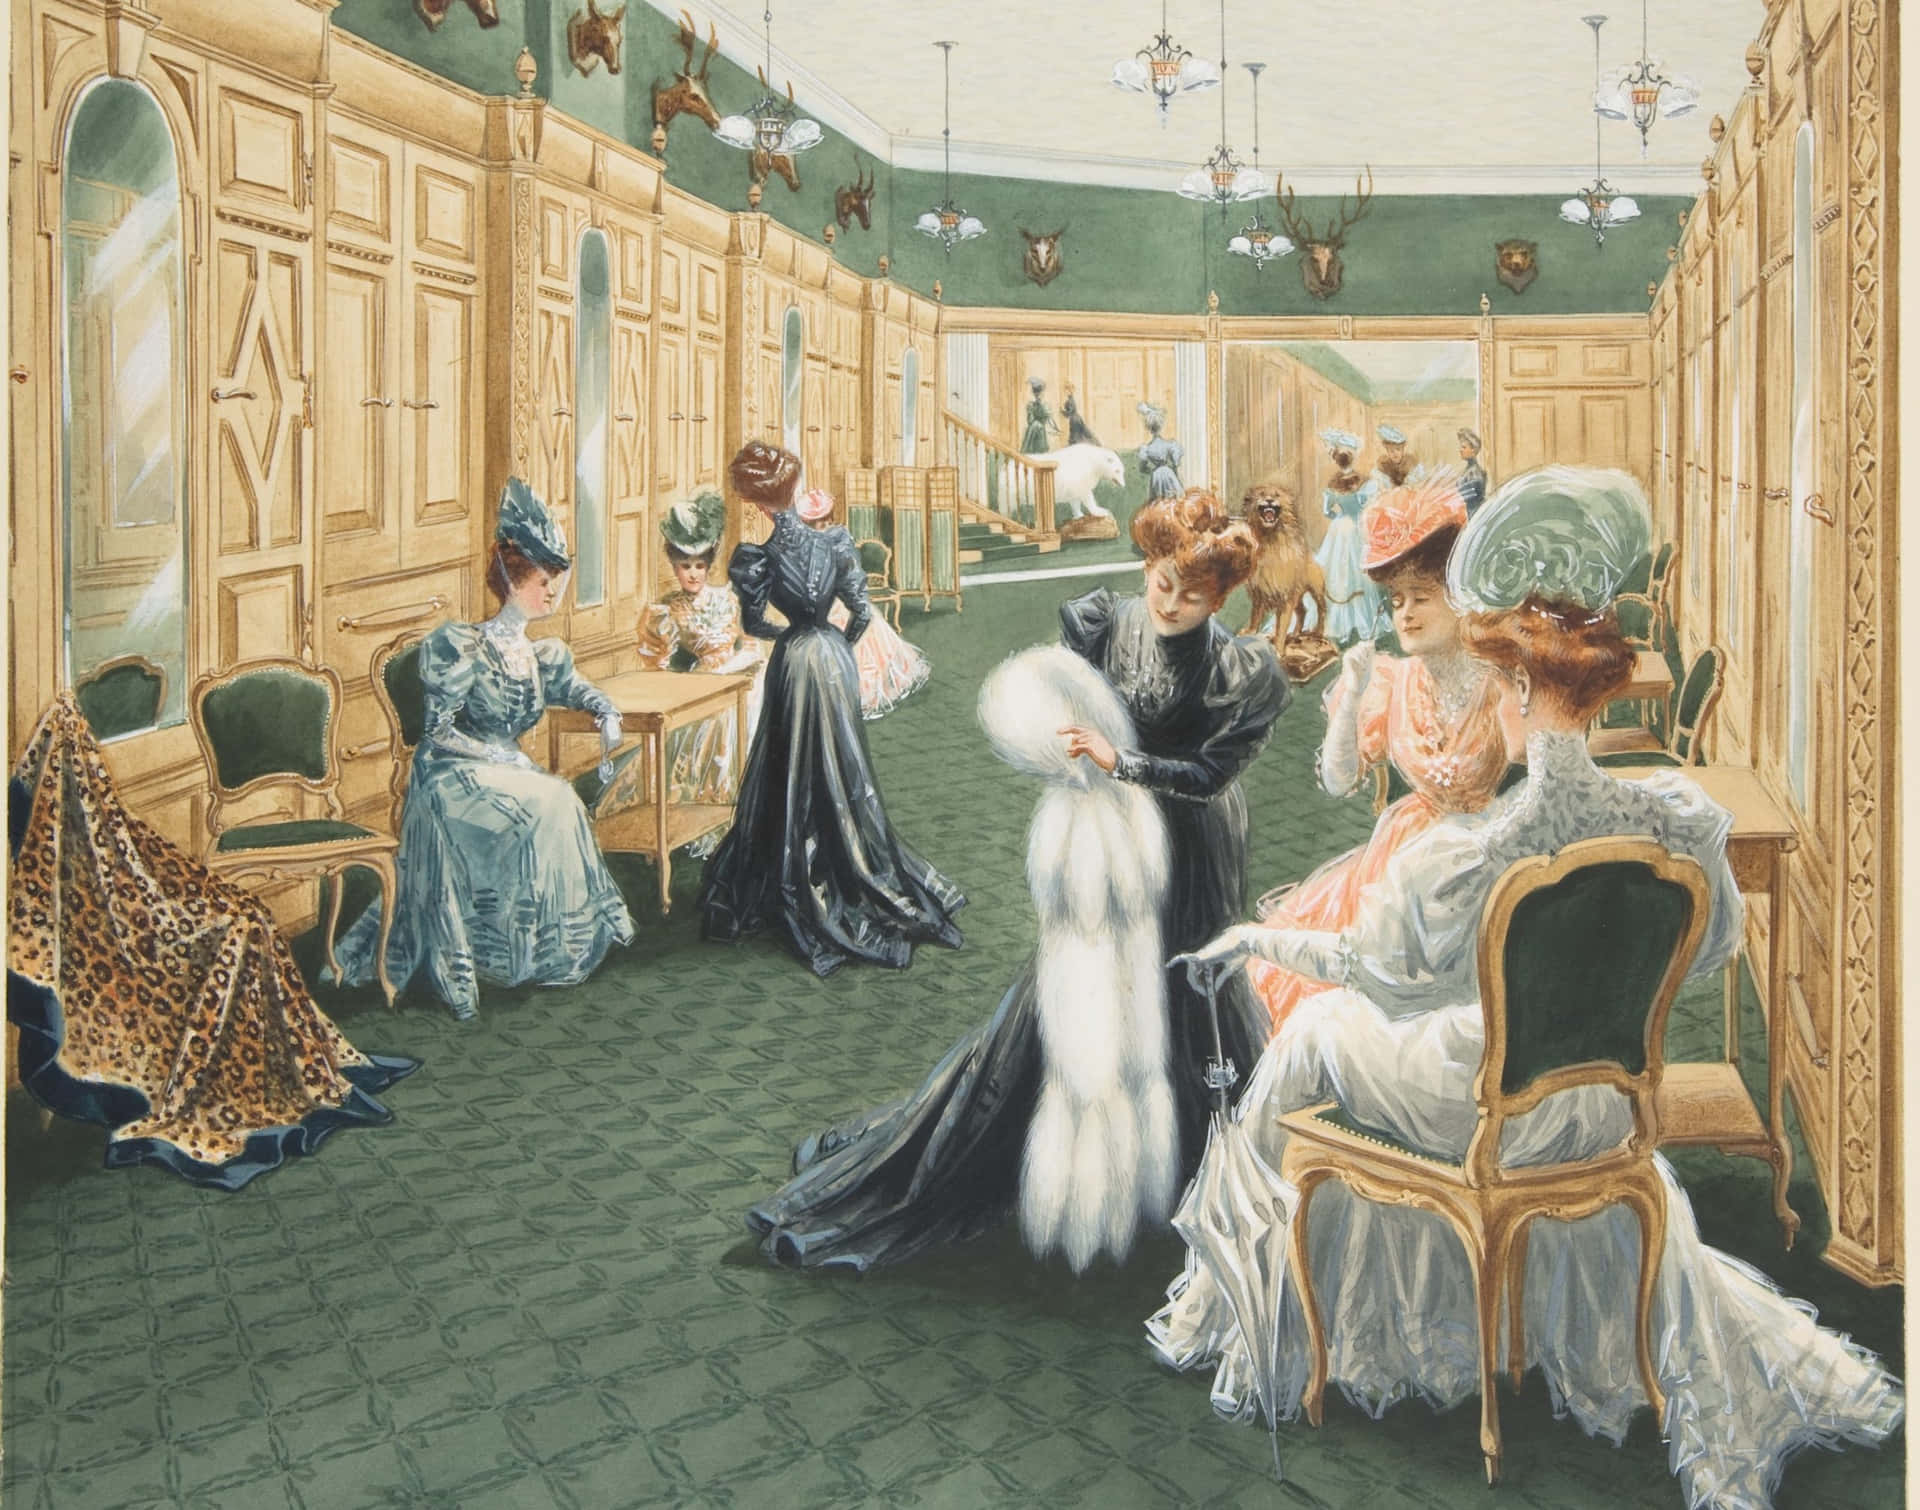 Etkig På Det Klassiske Stil Af Det Victorianske Liv.